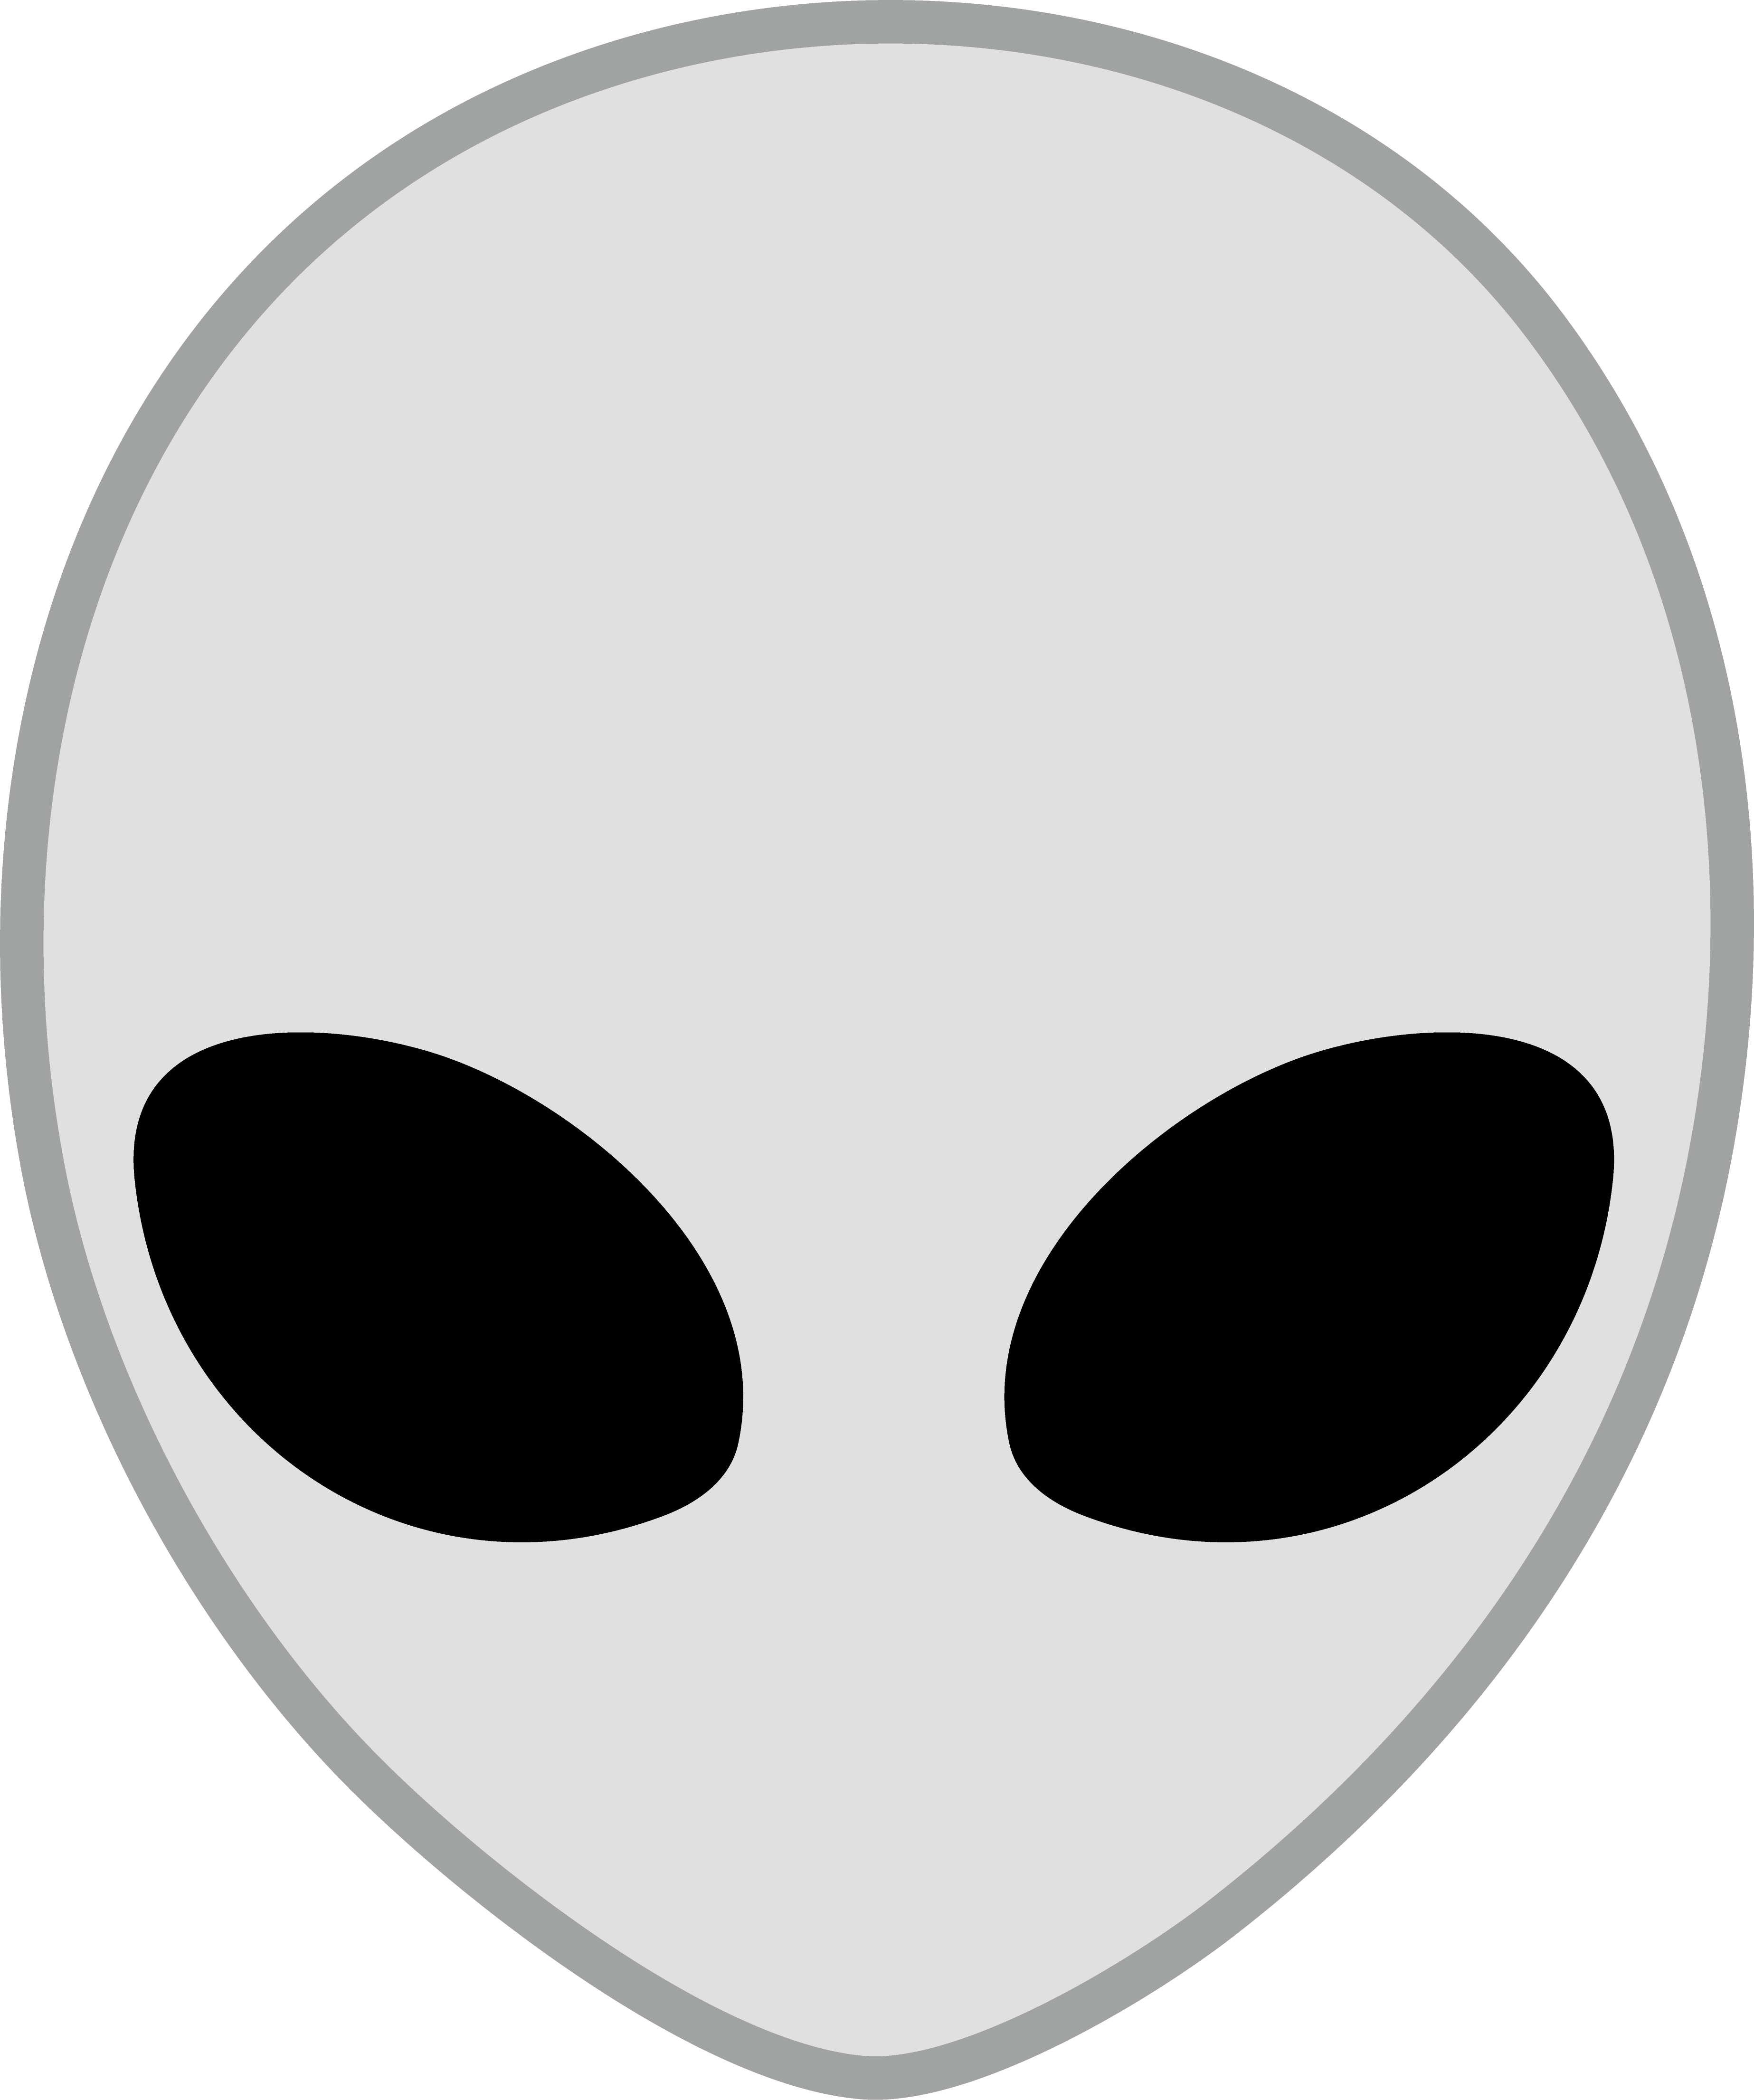 Alien Face Logo - Alien Head Clipart